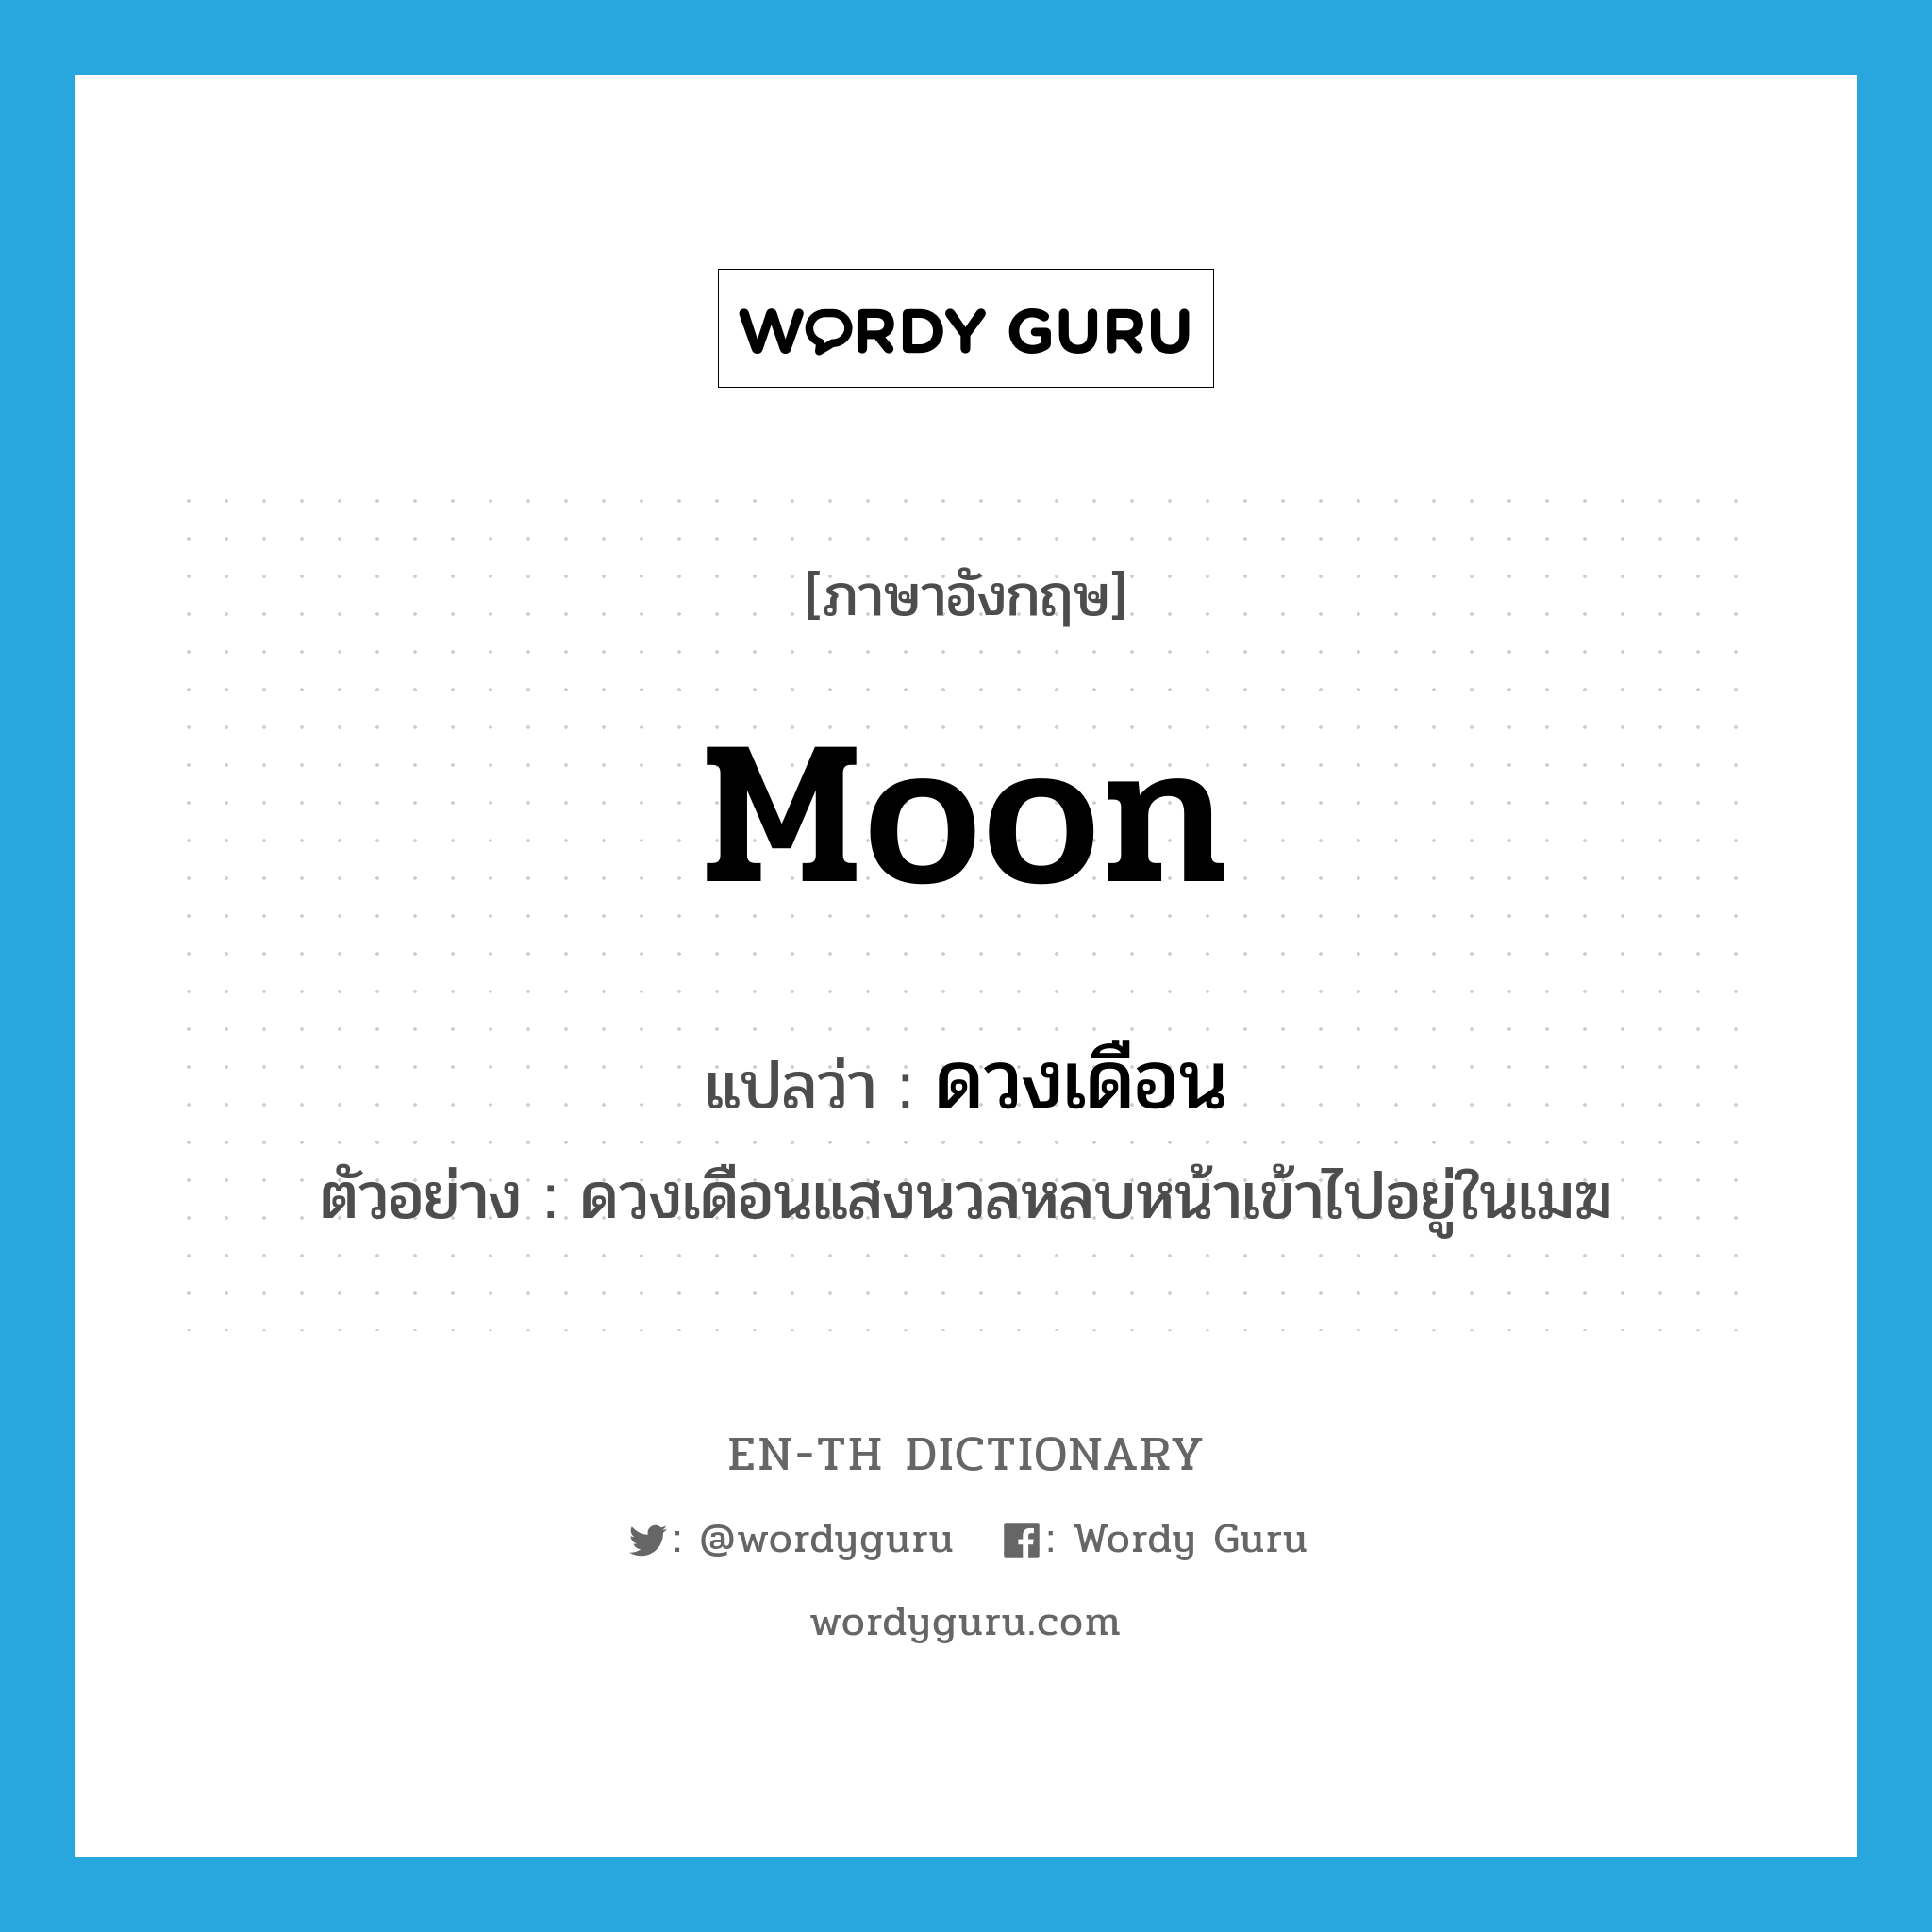 moon แปลว่า?, คำศัพท์ภาษาอังกฤษ moon แปลว่า ดวงเดือน ประเภท N ตัวอย่าง ดวงเดือนแสงนวลหลบหน้าเข้าไปอยู่ในเมฆ หมวด N